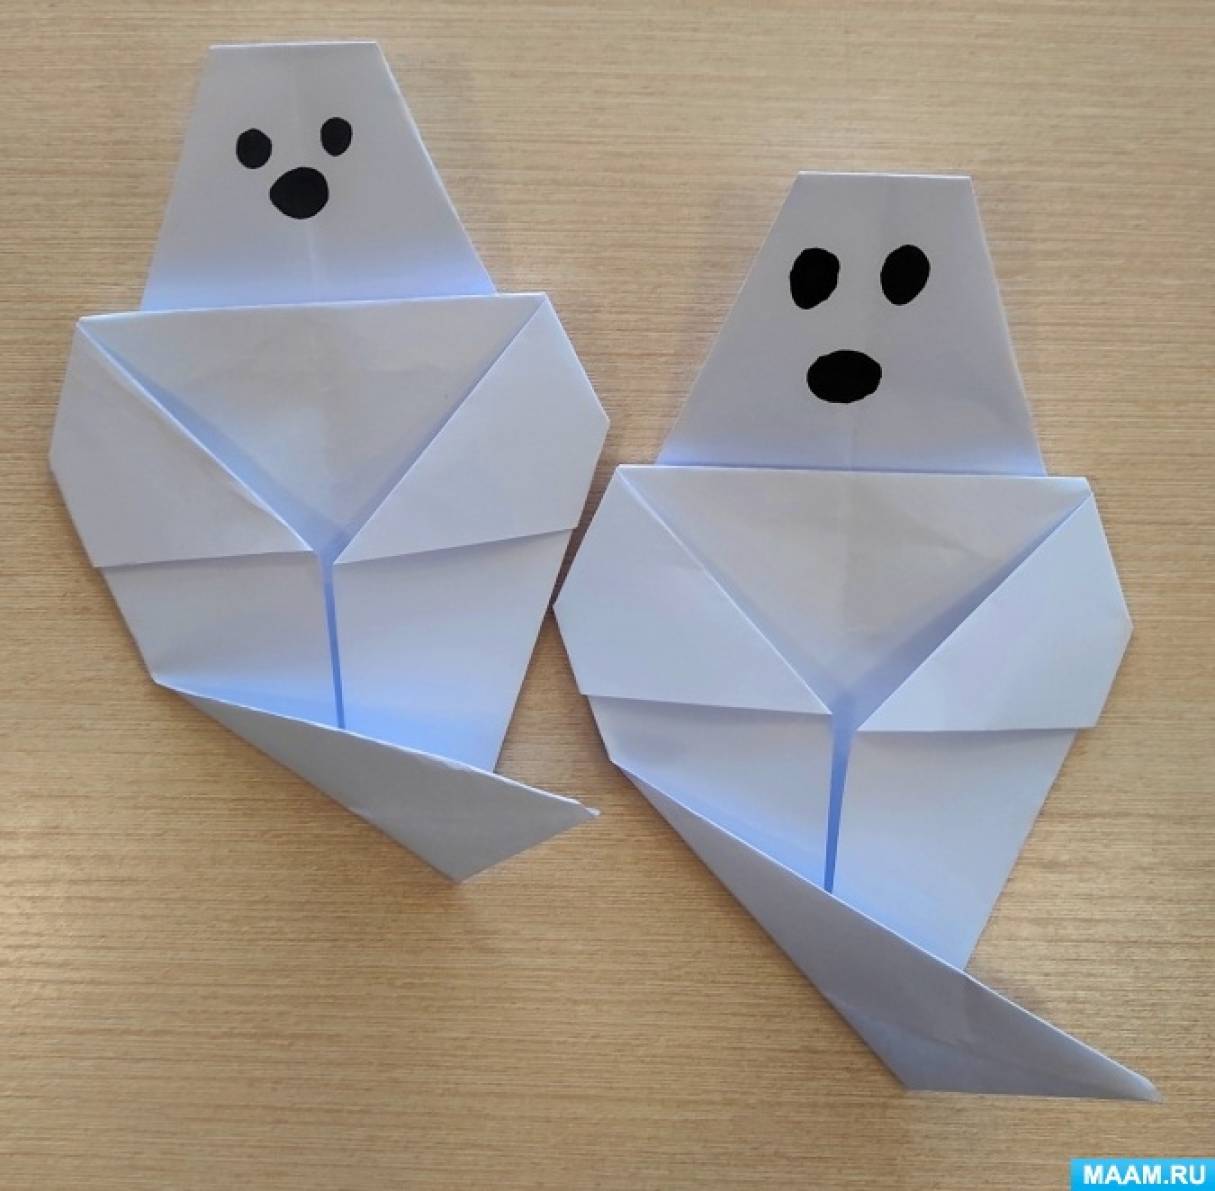 Публикация «Оригами из бумаги для детей дошкольного возраста» размещена в разделах